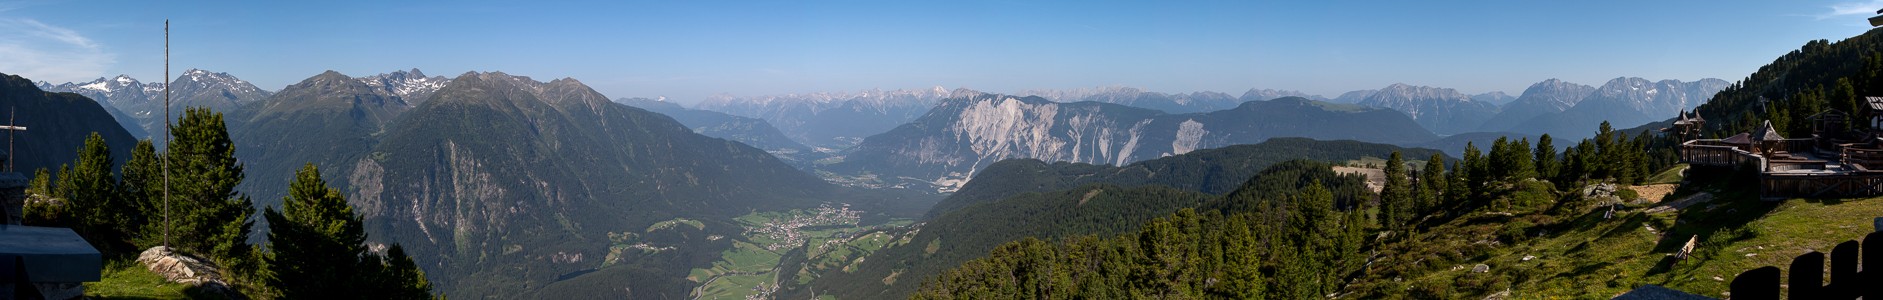 Blick von der Bielefelder Hütte: Ötztaler Alpen, Ötztal, Inntal, Lechttaler Alpen und Mieminger Kette Hochoetz